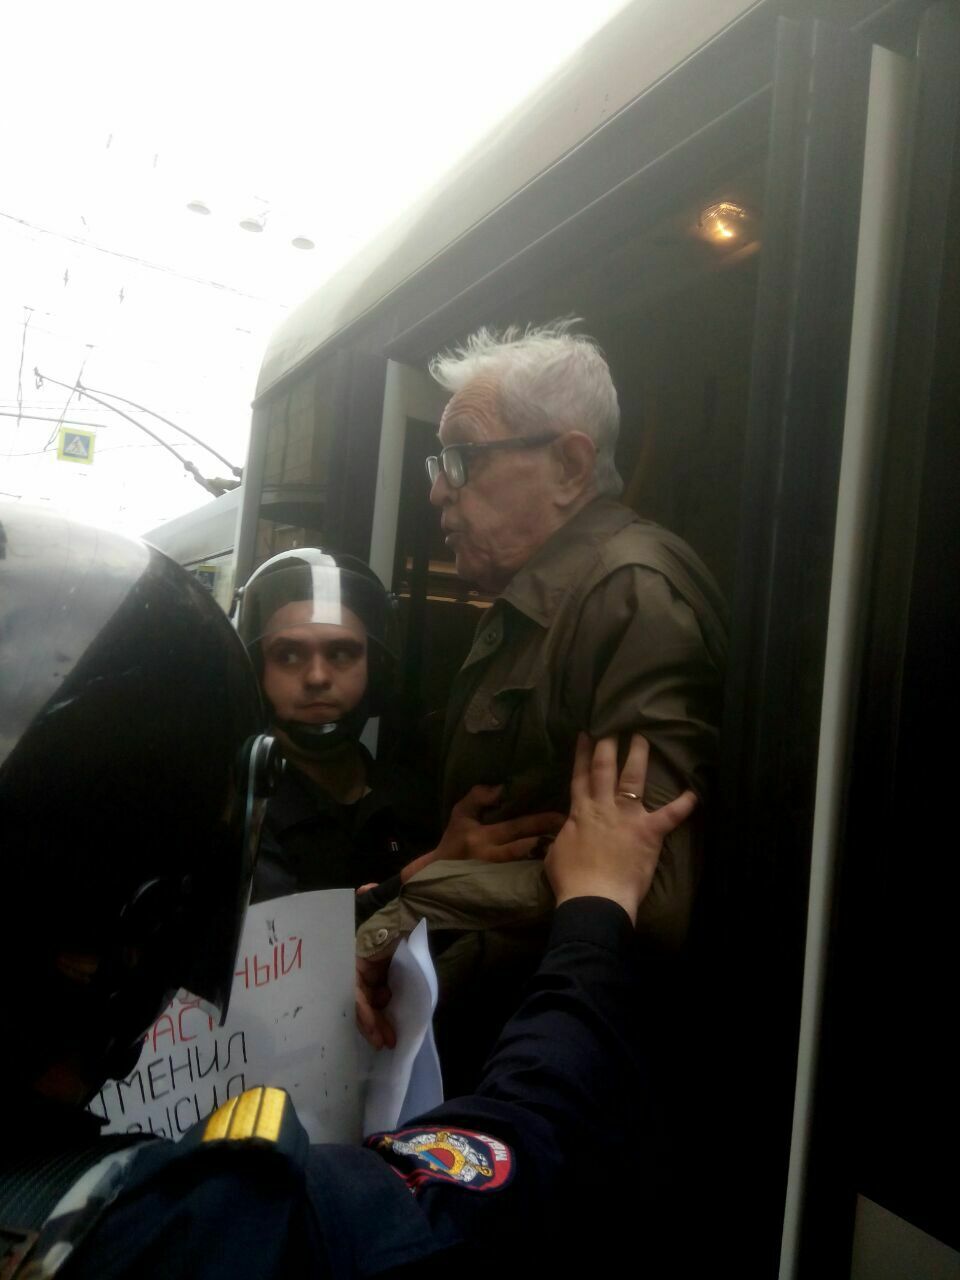 Один из задержанных на акции против пенсионной реформы, которая проходит у площади Ленина, — пожилой мужчина. Во время задержания он говорил, что ему 80 лет.